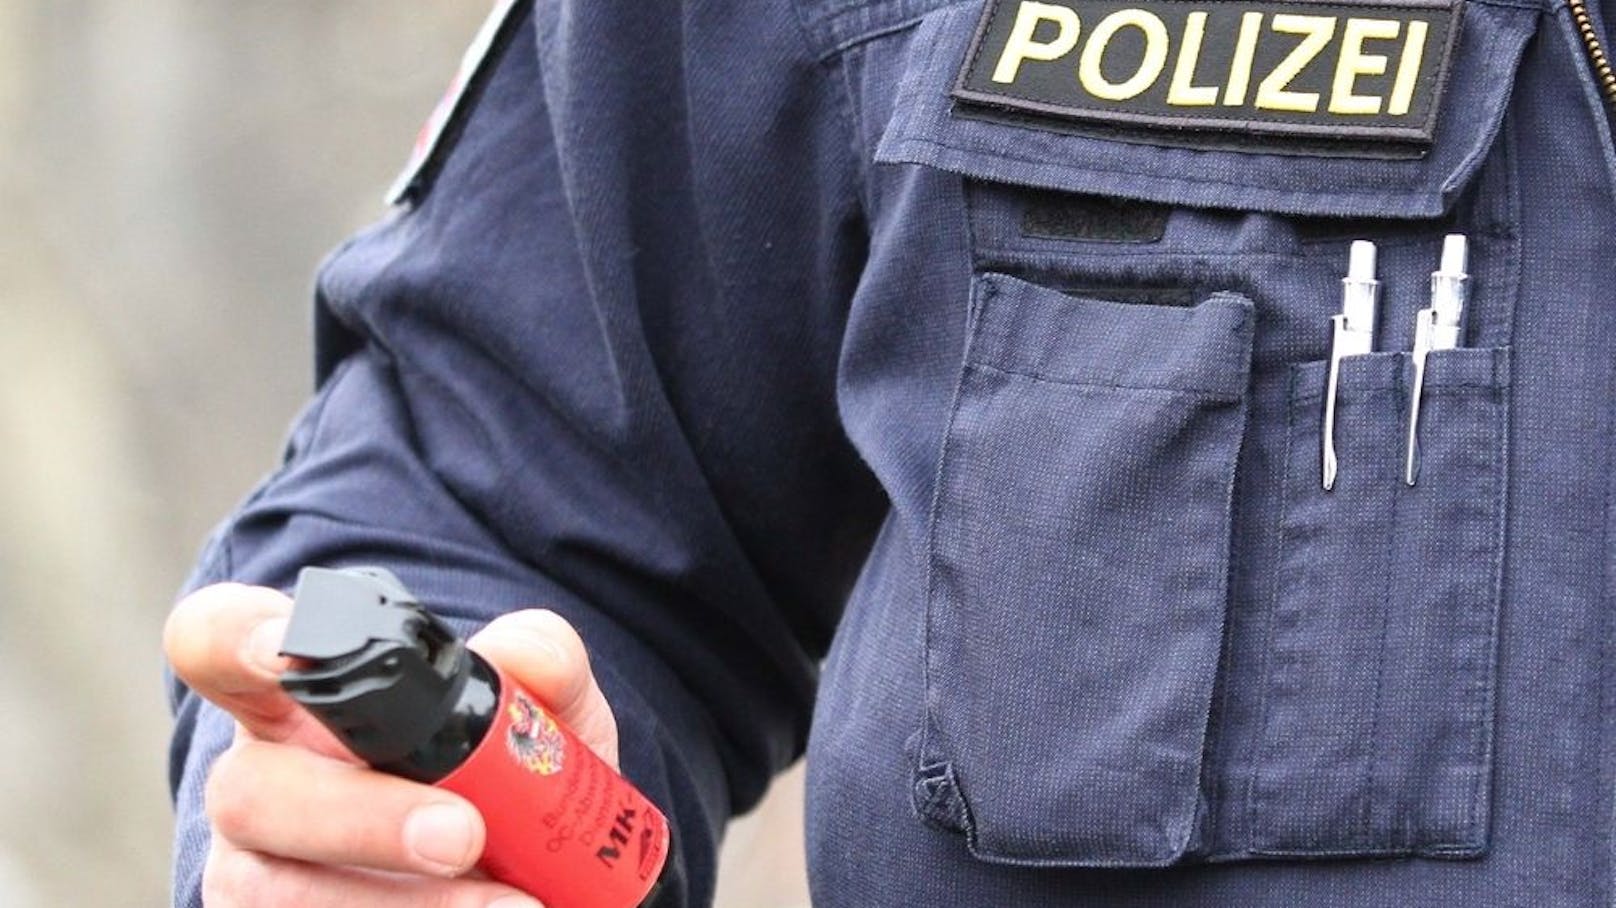 Abgelaufener Pfefferspray im Einsatz bei Polizei - Wien | heute.at